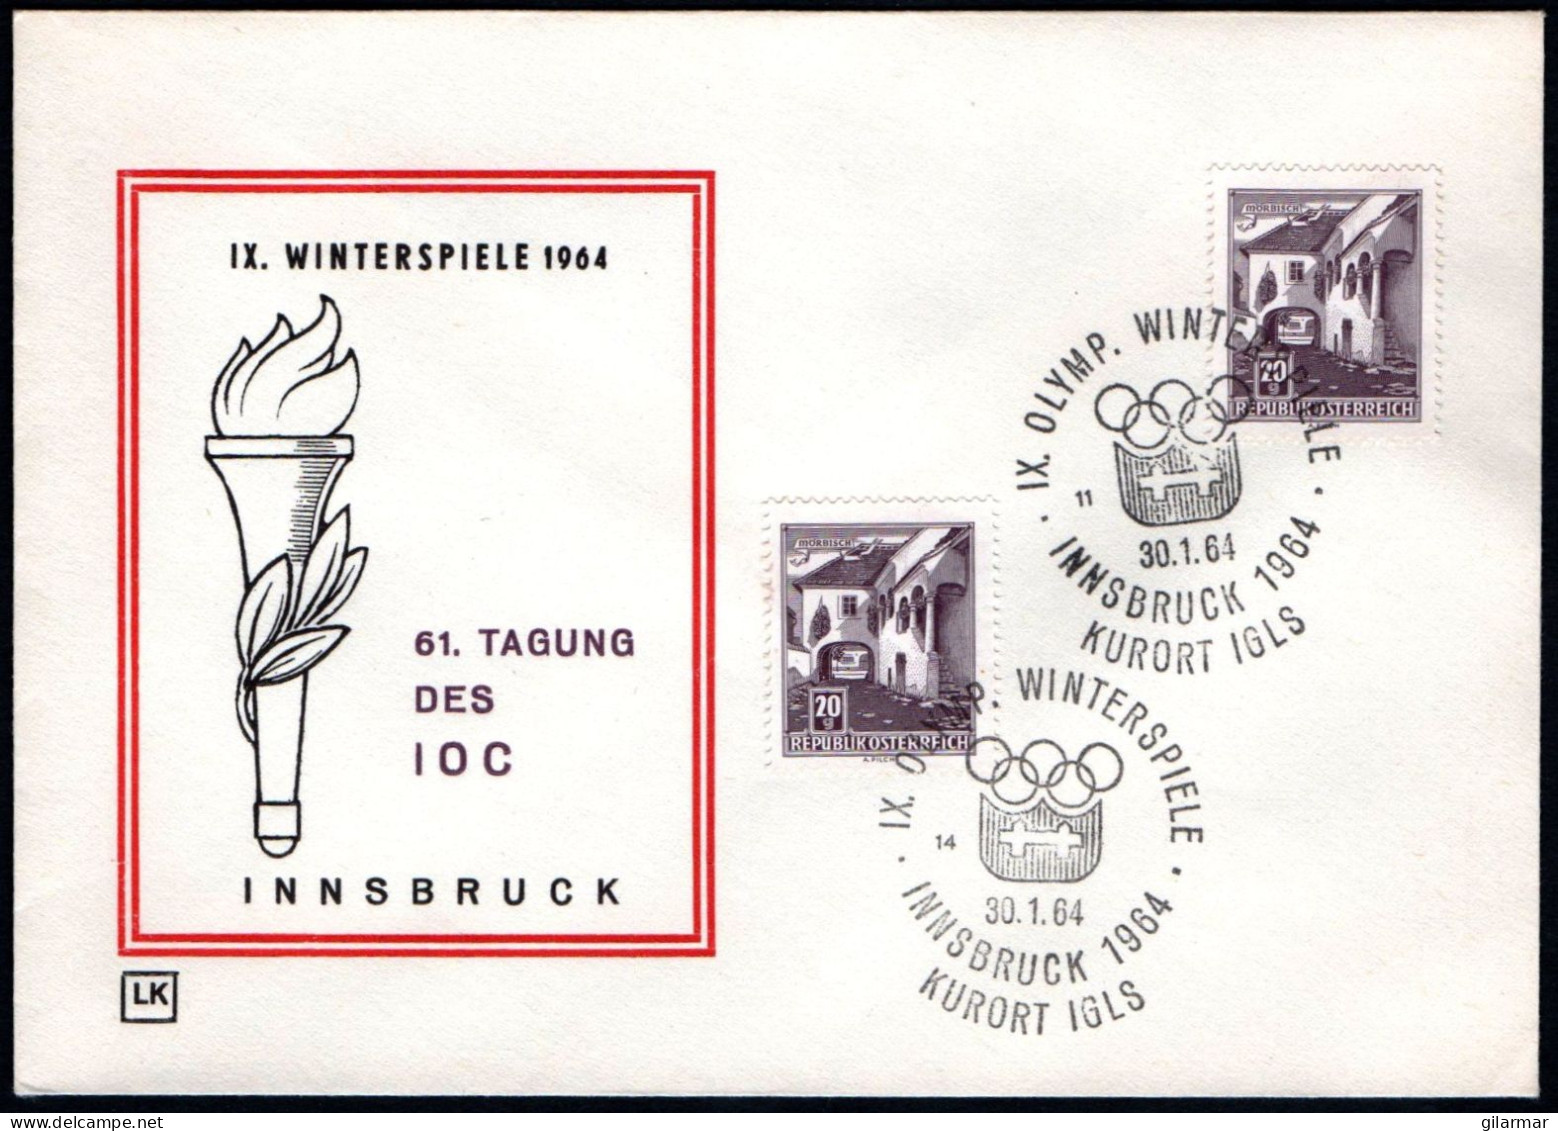 AUSTRIA KURORT IGLS 1964 - IX OLYMPIC WINTER GAMES - INNSBRUCK '64 - CANCELS # 14 & 11 - G - Hiver 1964: Innsbruck